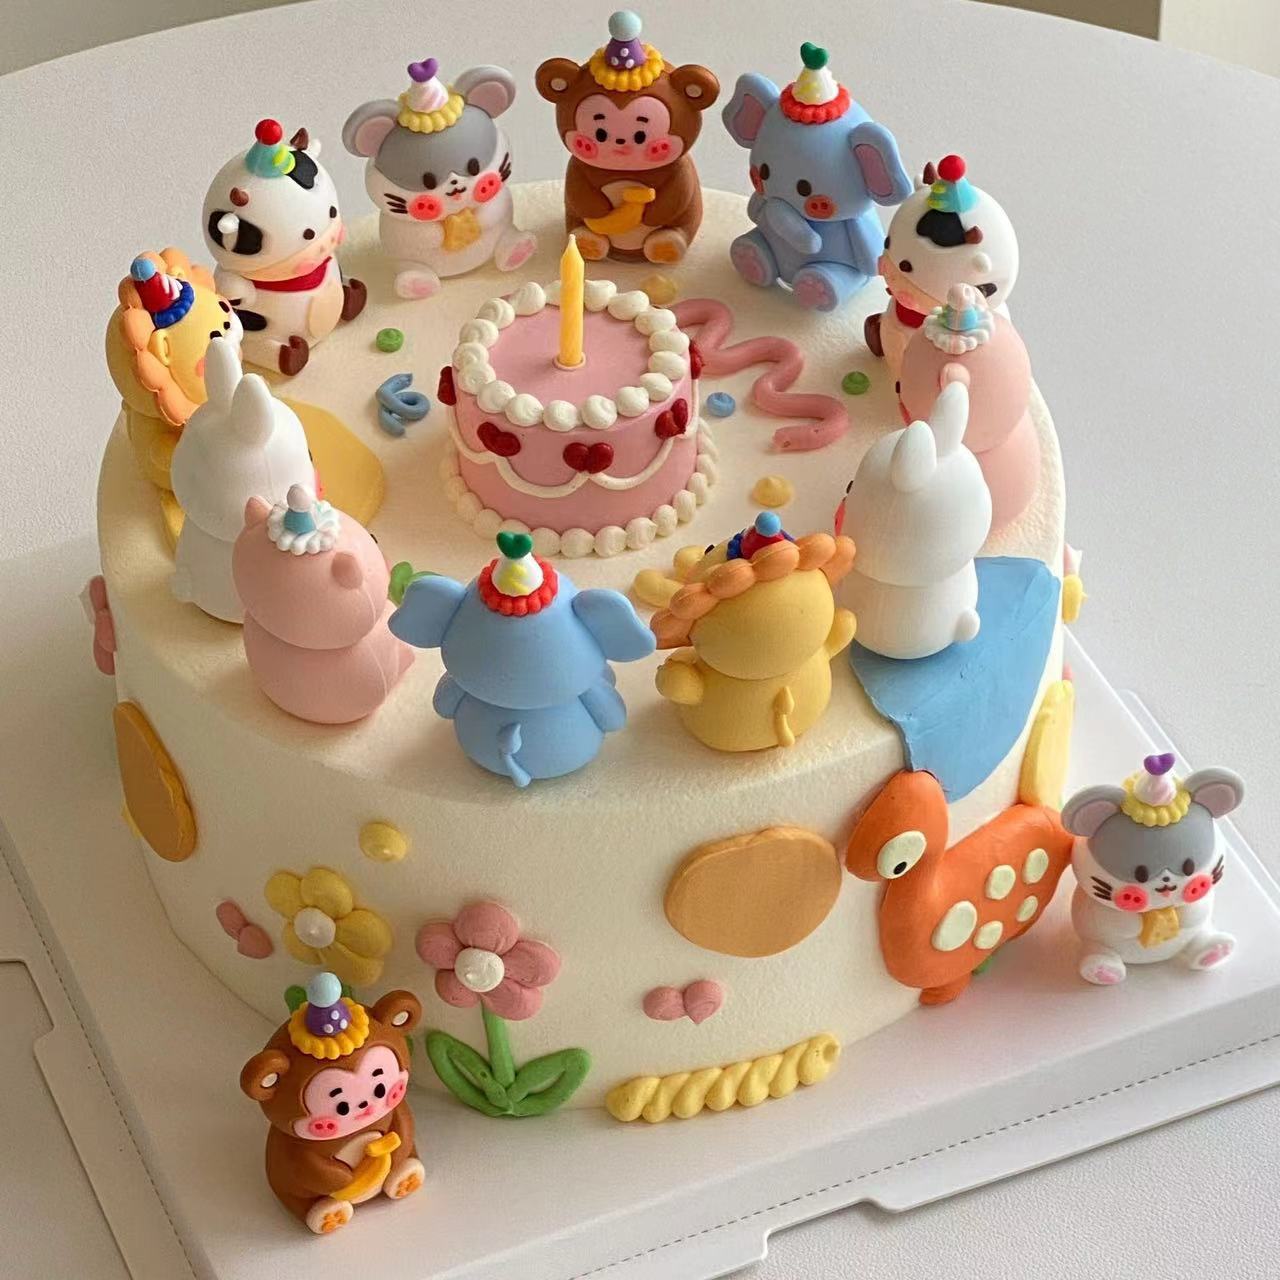 卡通软胶小动物蛋糕装饰摆件大象老虎熊兔鼠猴12生肖甜品布置装扮